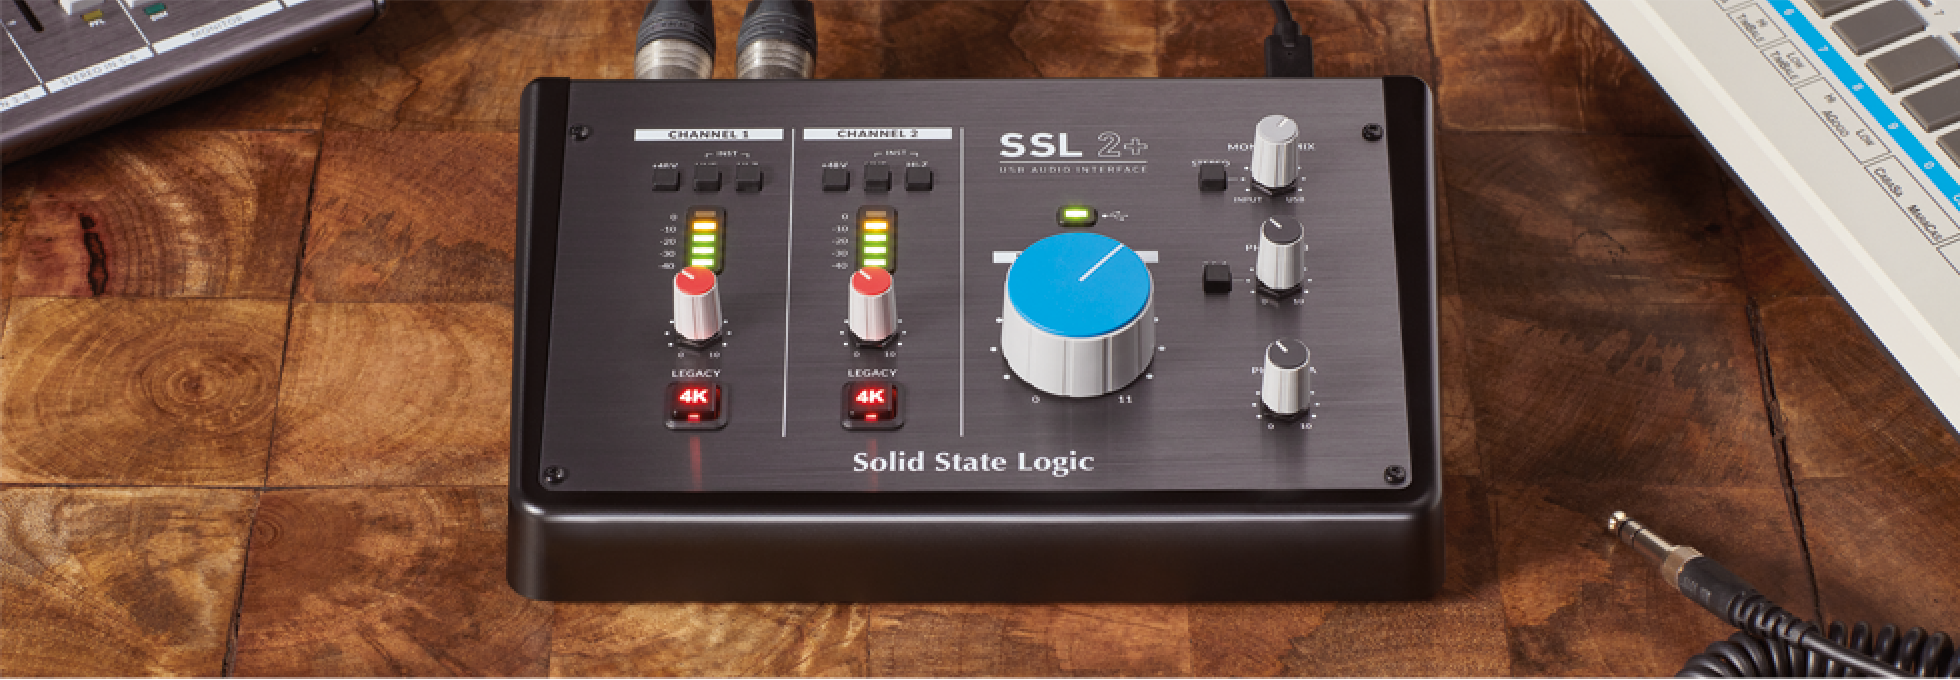 Ssl 2+ - USB audio interface - Variation 3